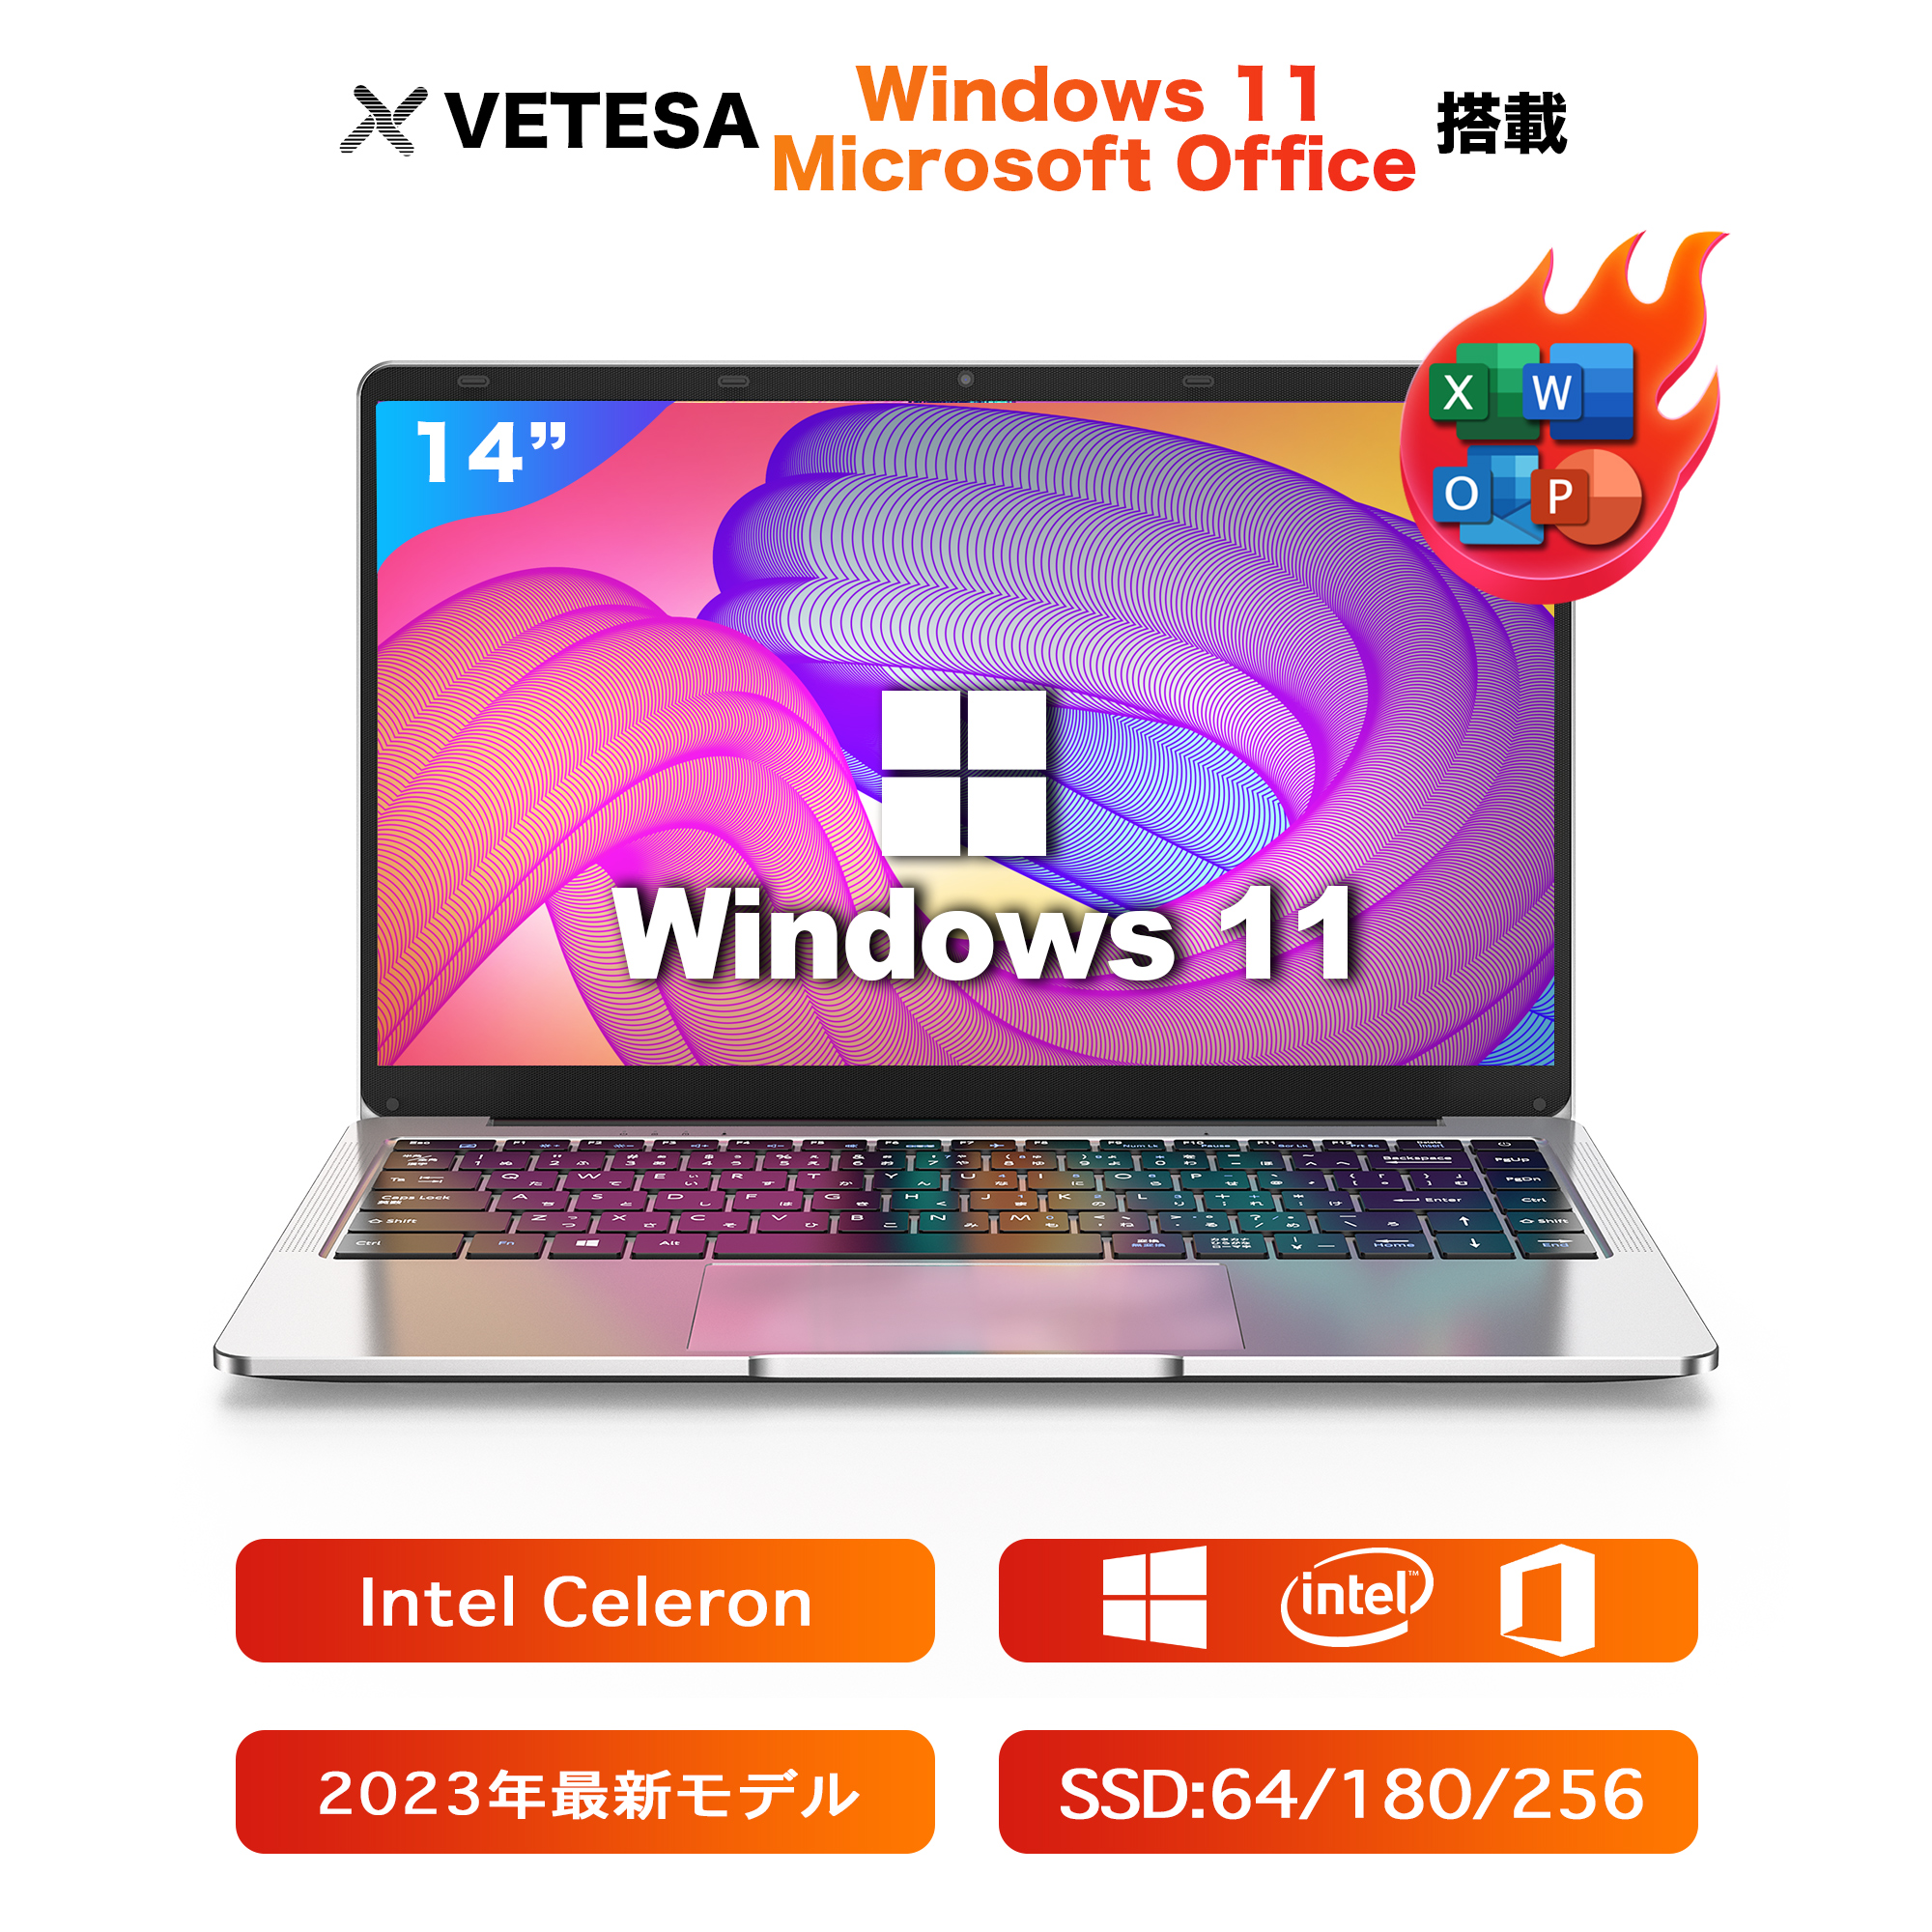 ノートパソコン 新品 薄型ノートPC office付き Win11搭載 14インチ Celeron N3350 メモリ6GB SSD64GB 日本語キーボードデュアル 軽量薄型 パソコンノート14q8l